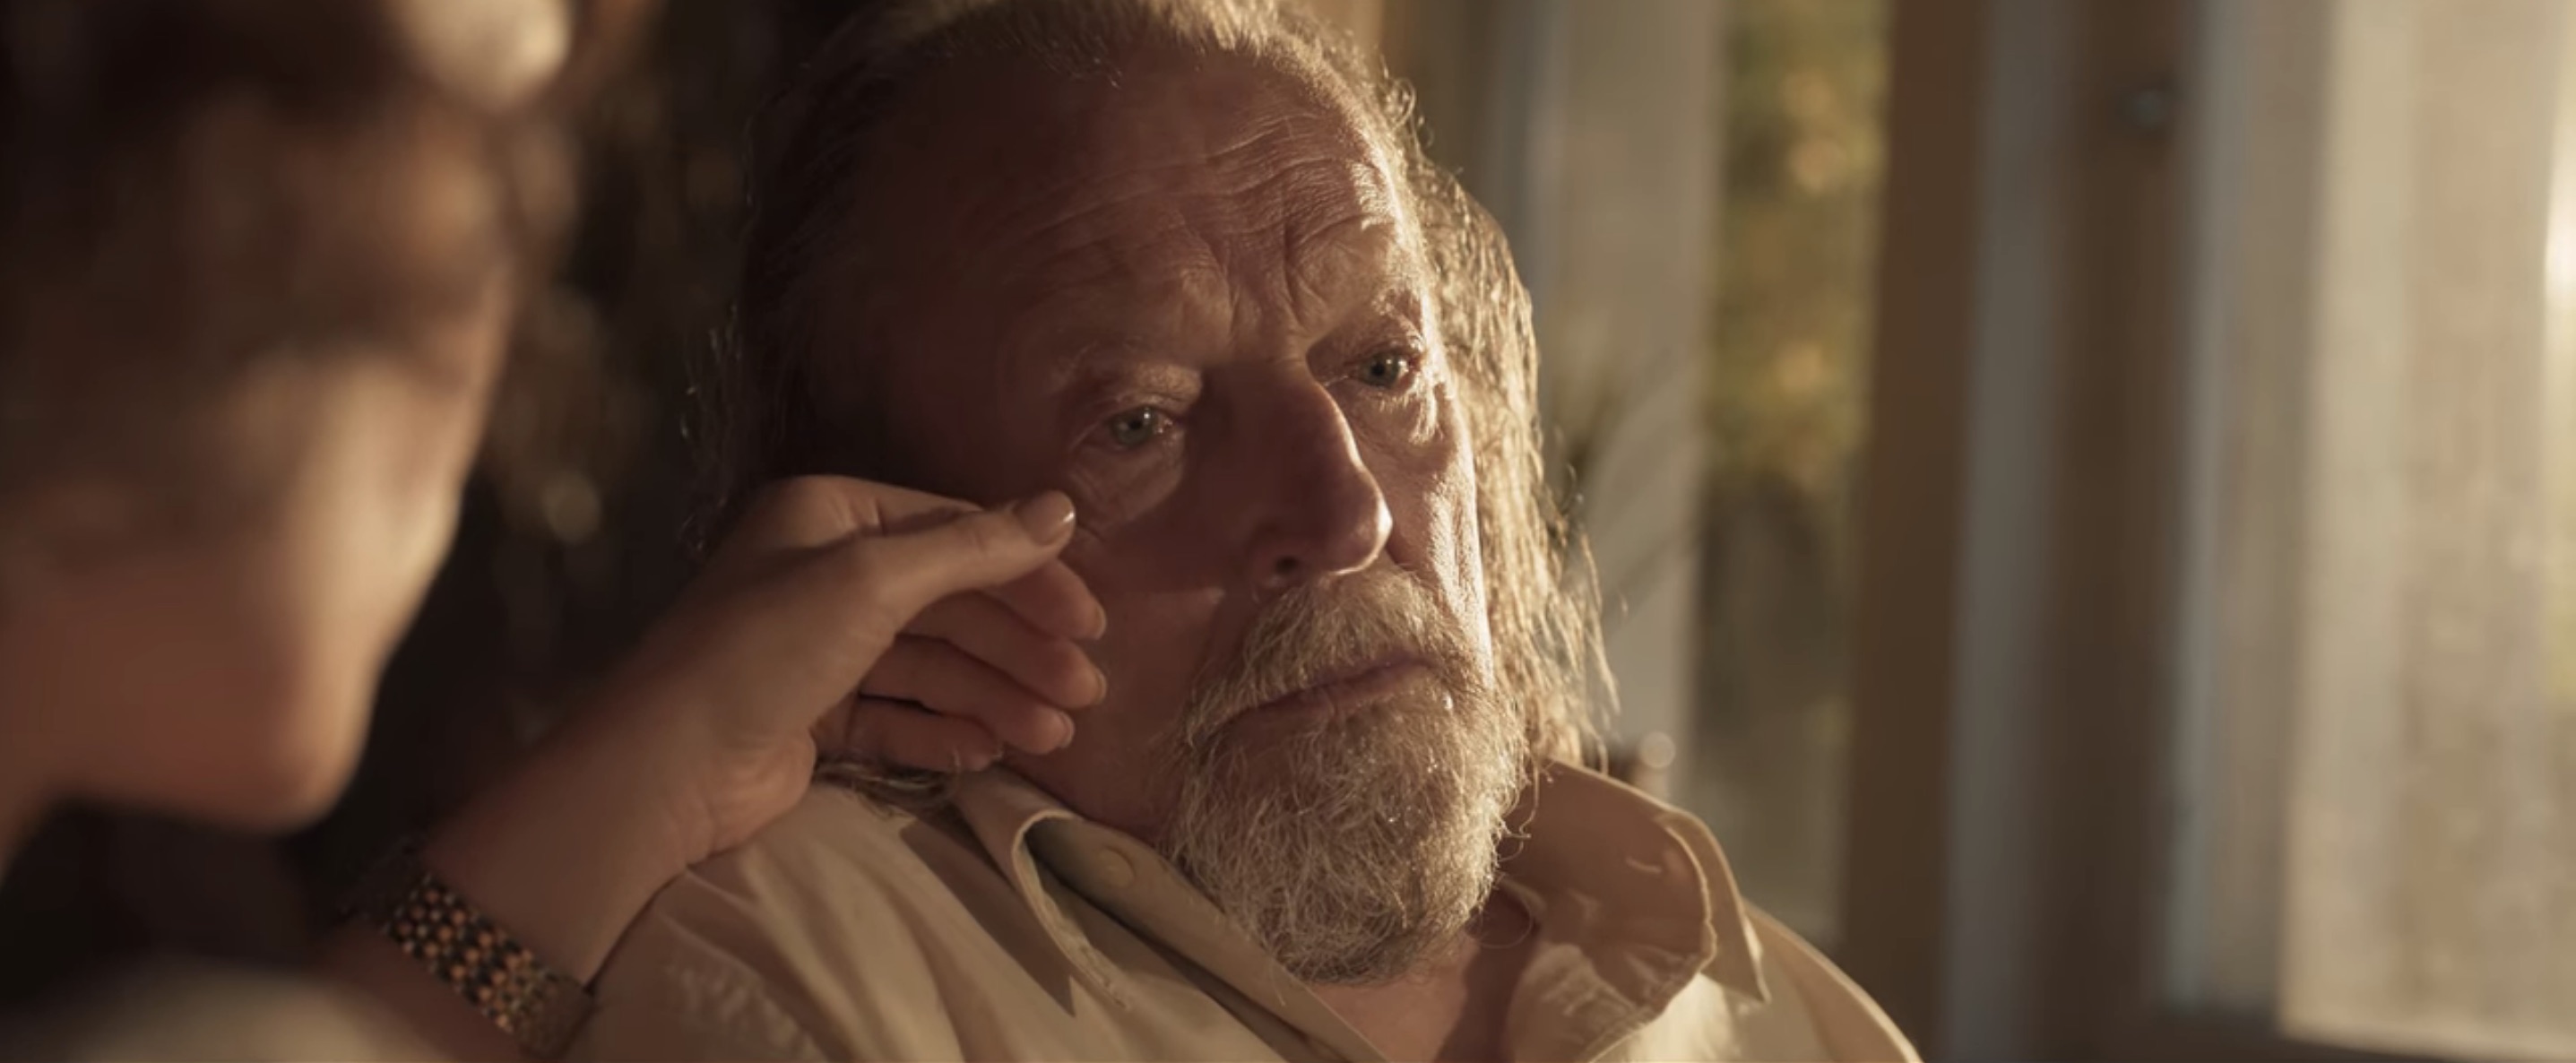 Old People Cast on Netflix - Paul Fassnacht as Opa Aike